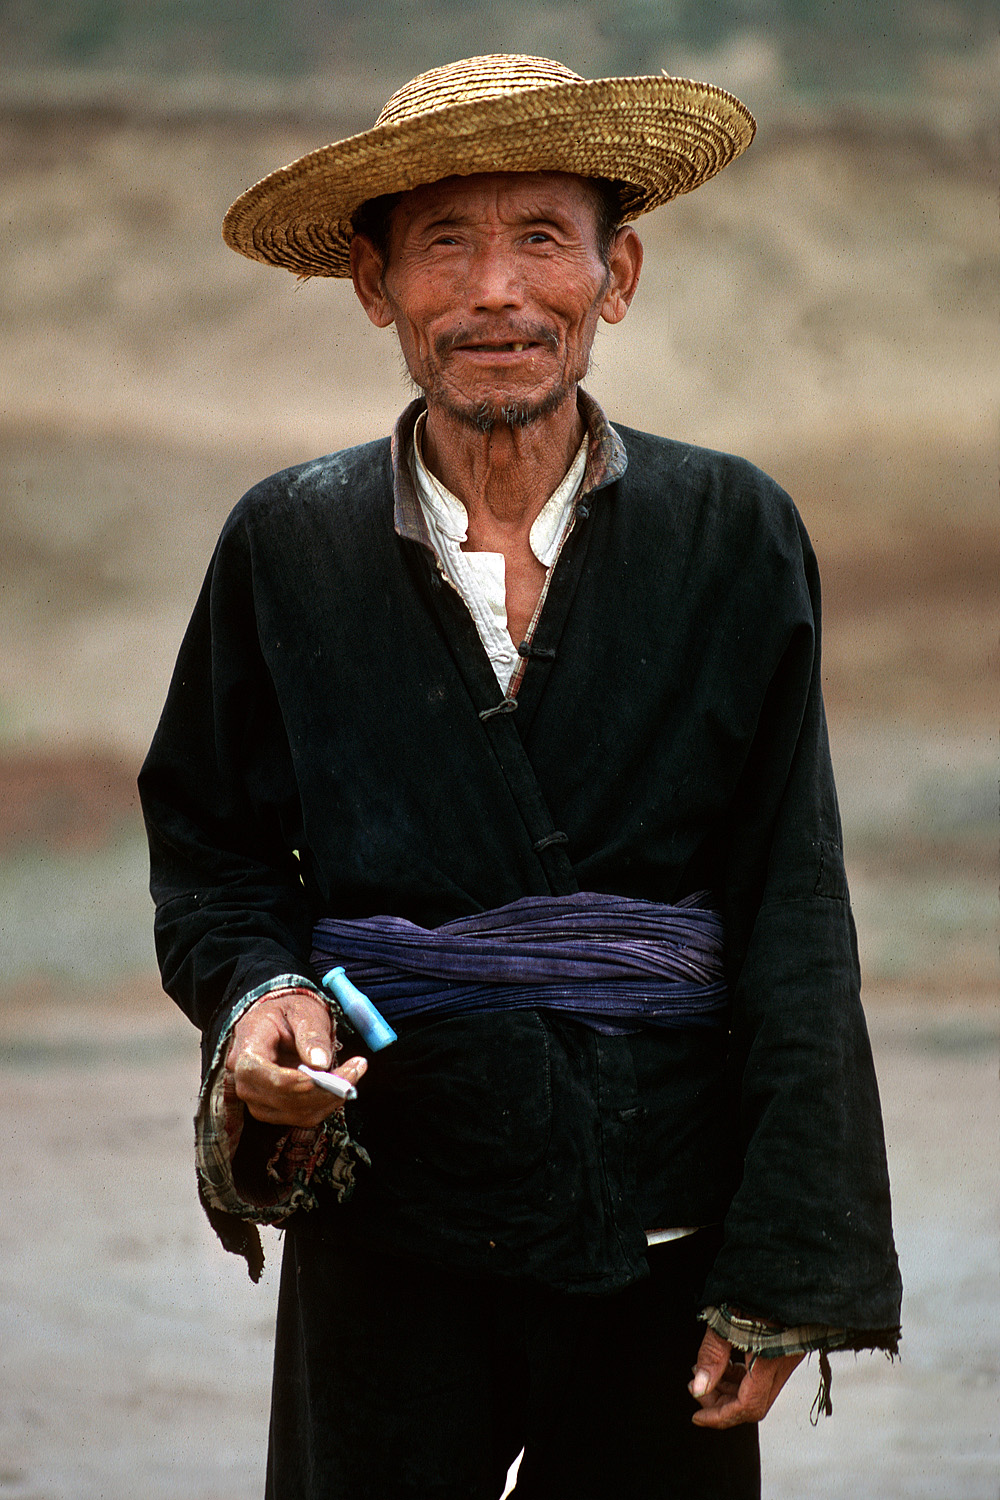 bill-hocker-smoker-shanxi-china-1981